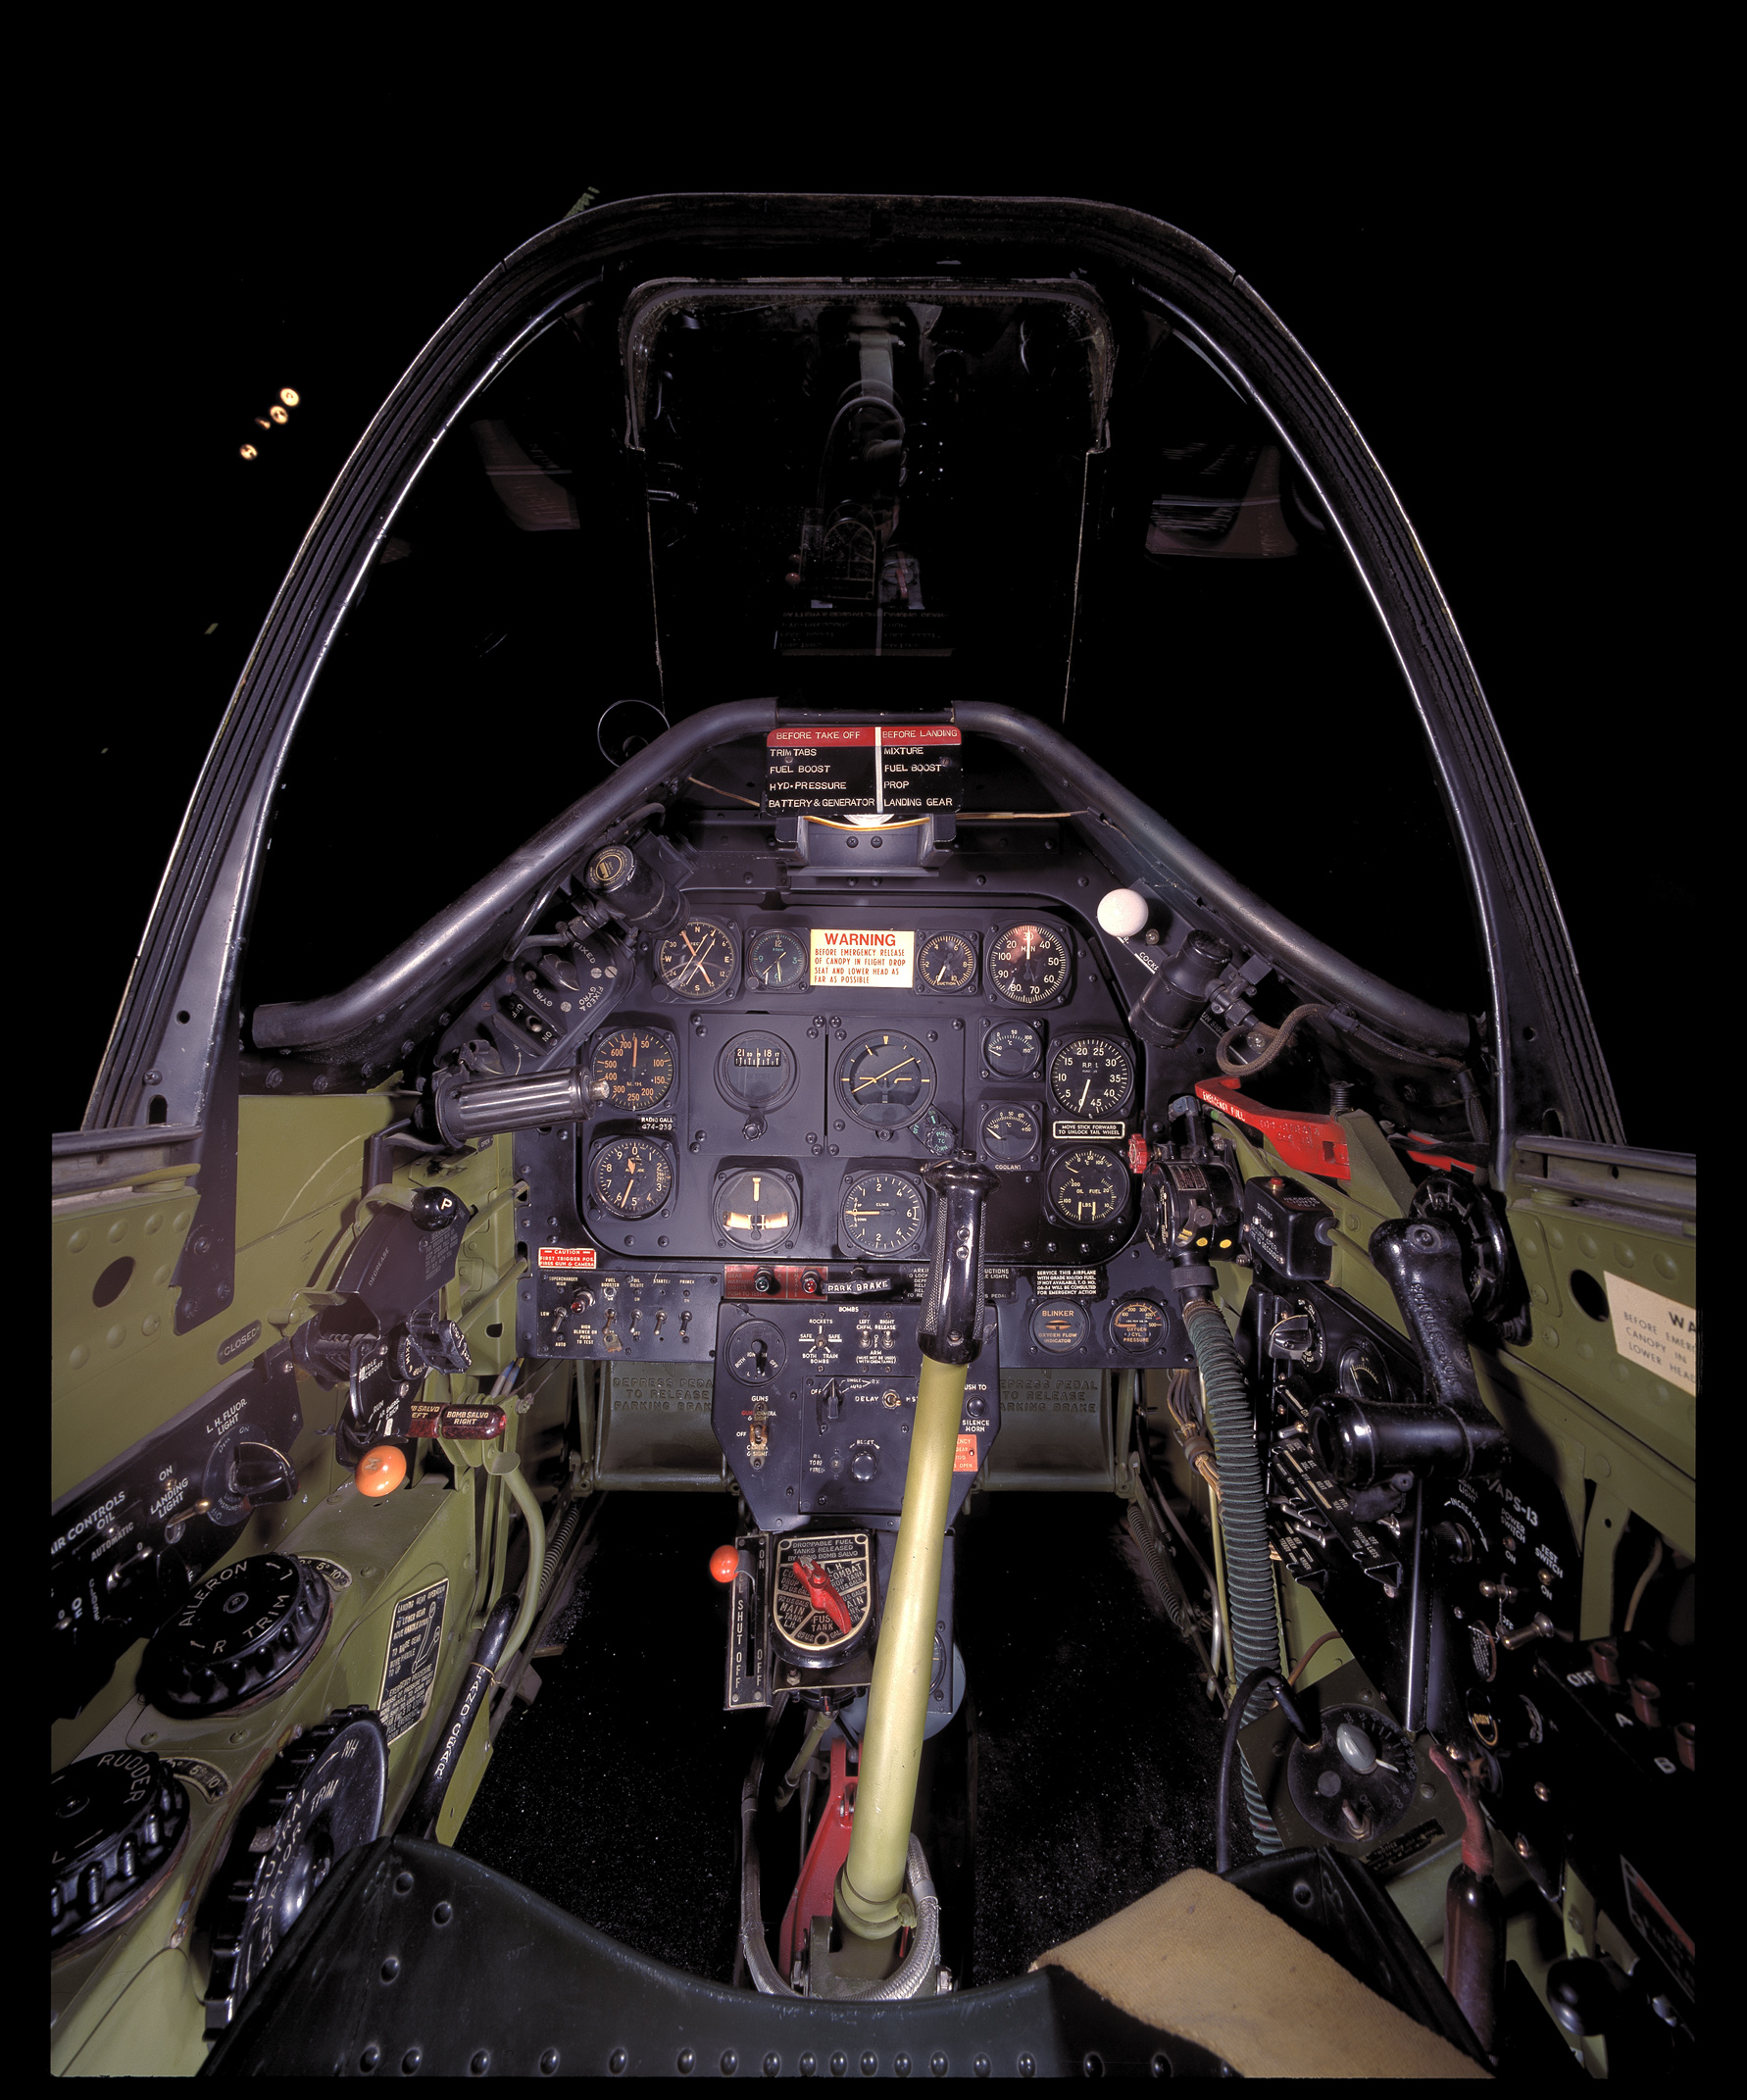 landinding a p51 cockpit view